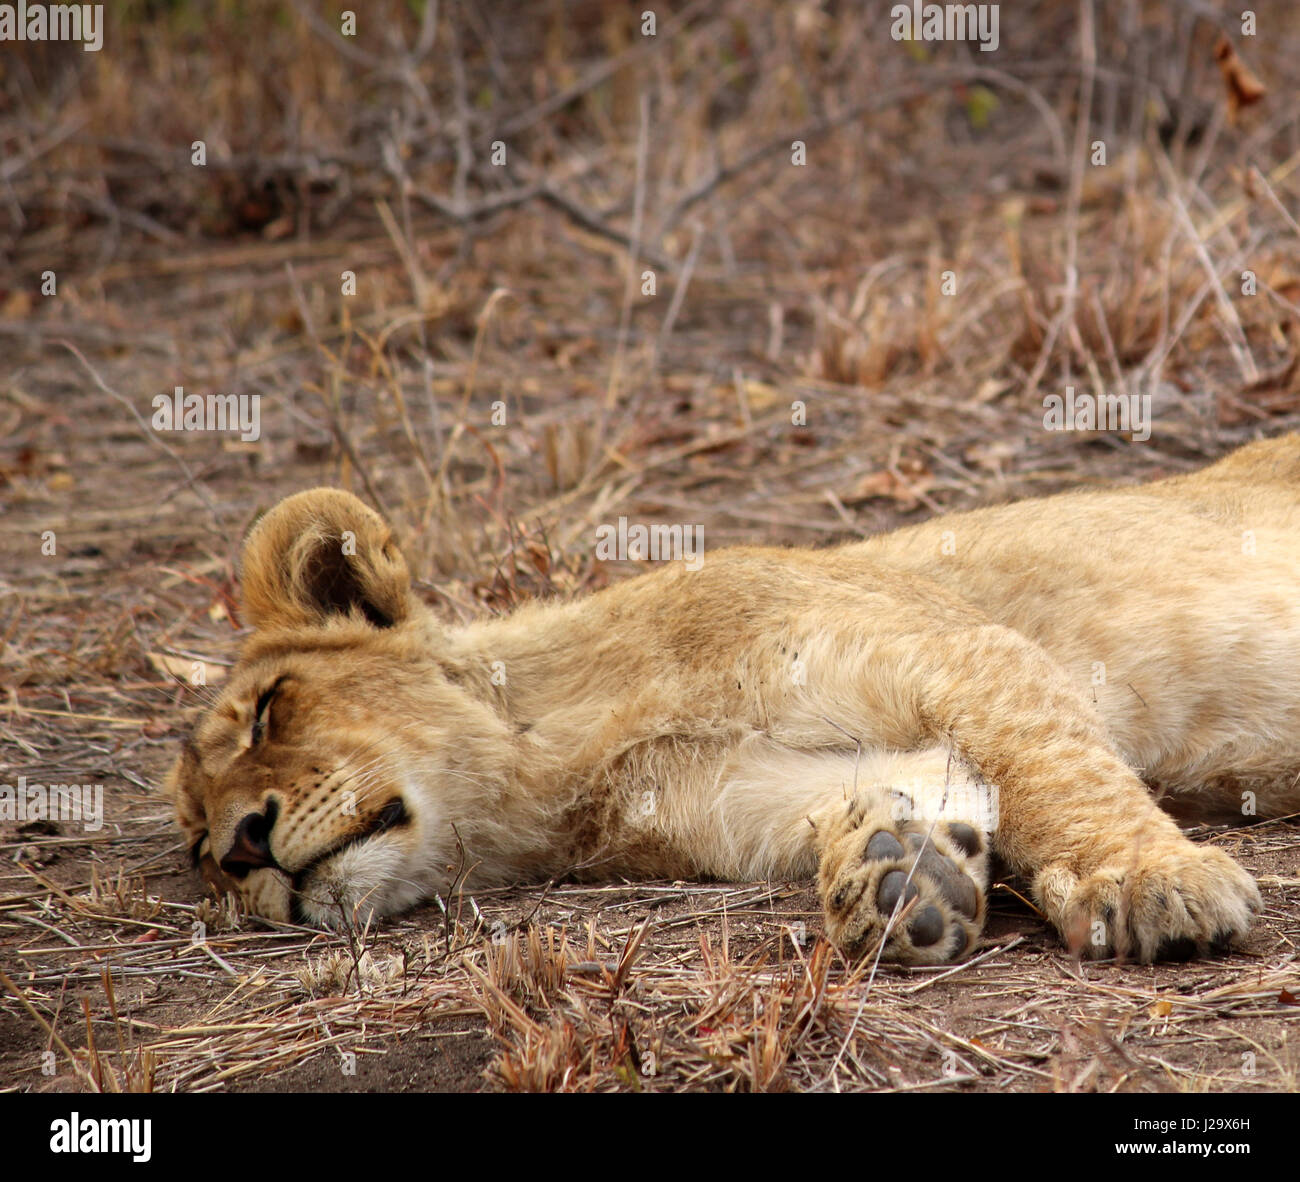 Incredibile wild LION CUB appoggiata nella boccola Foto Stock